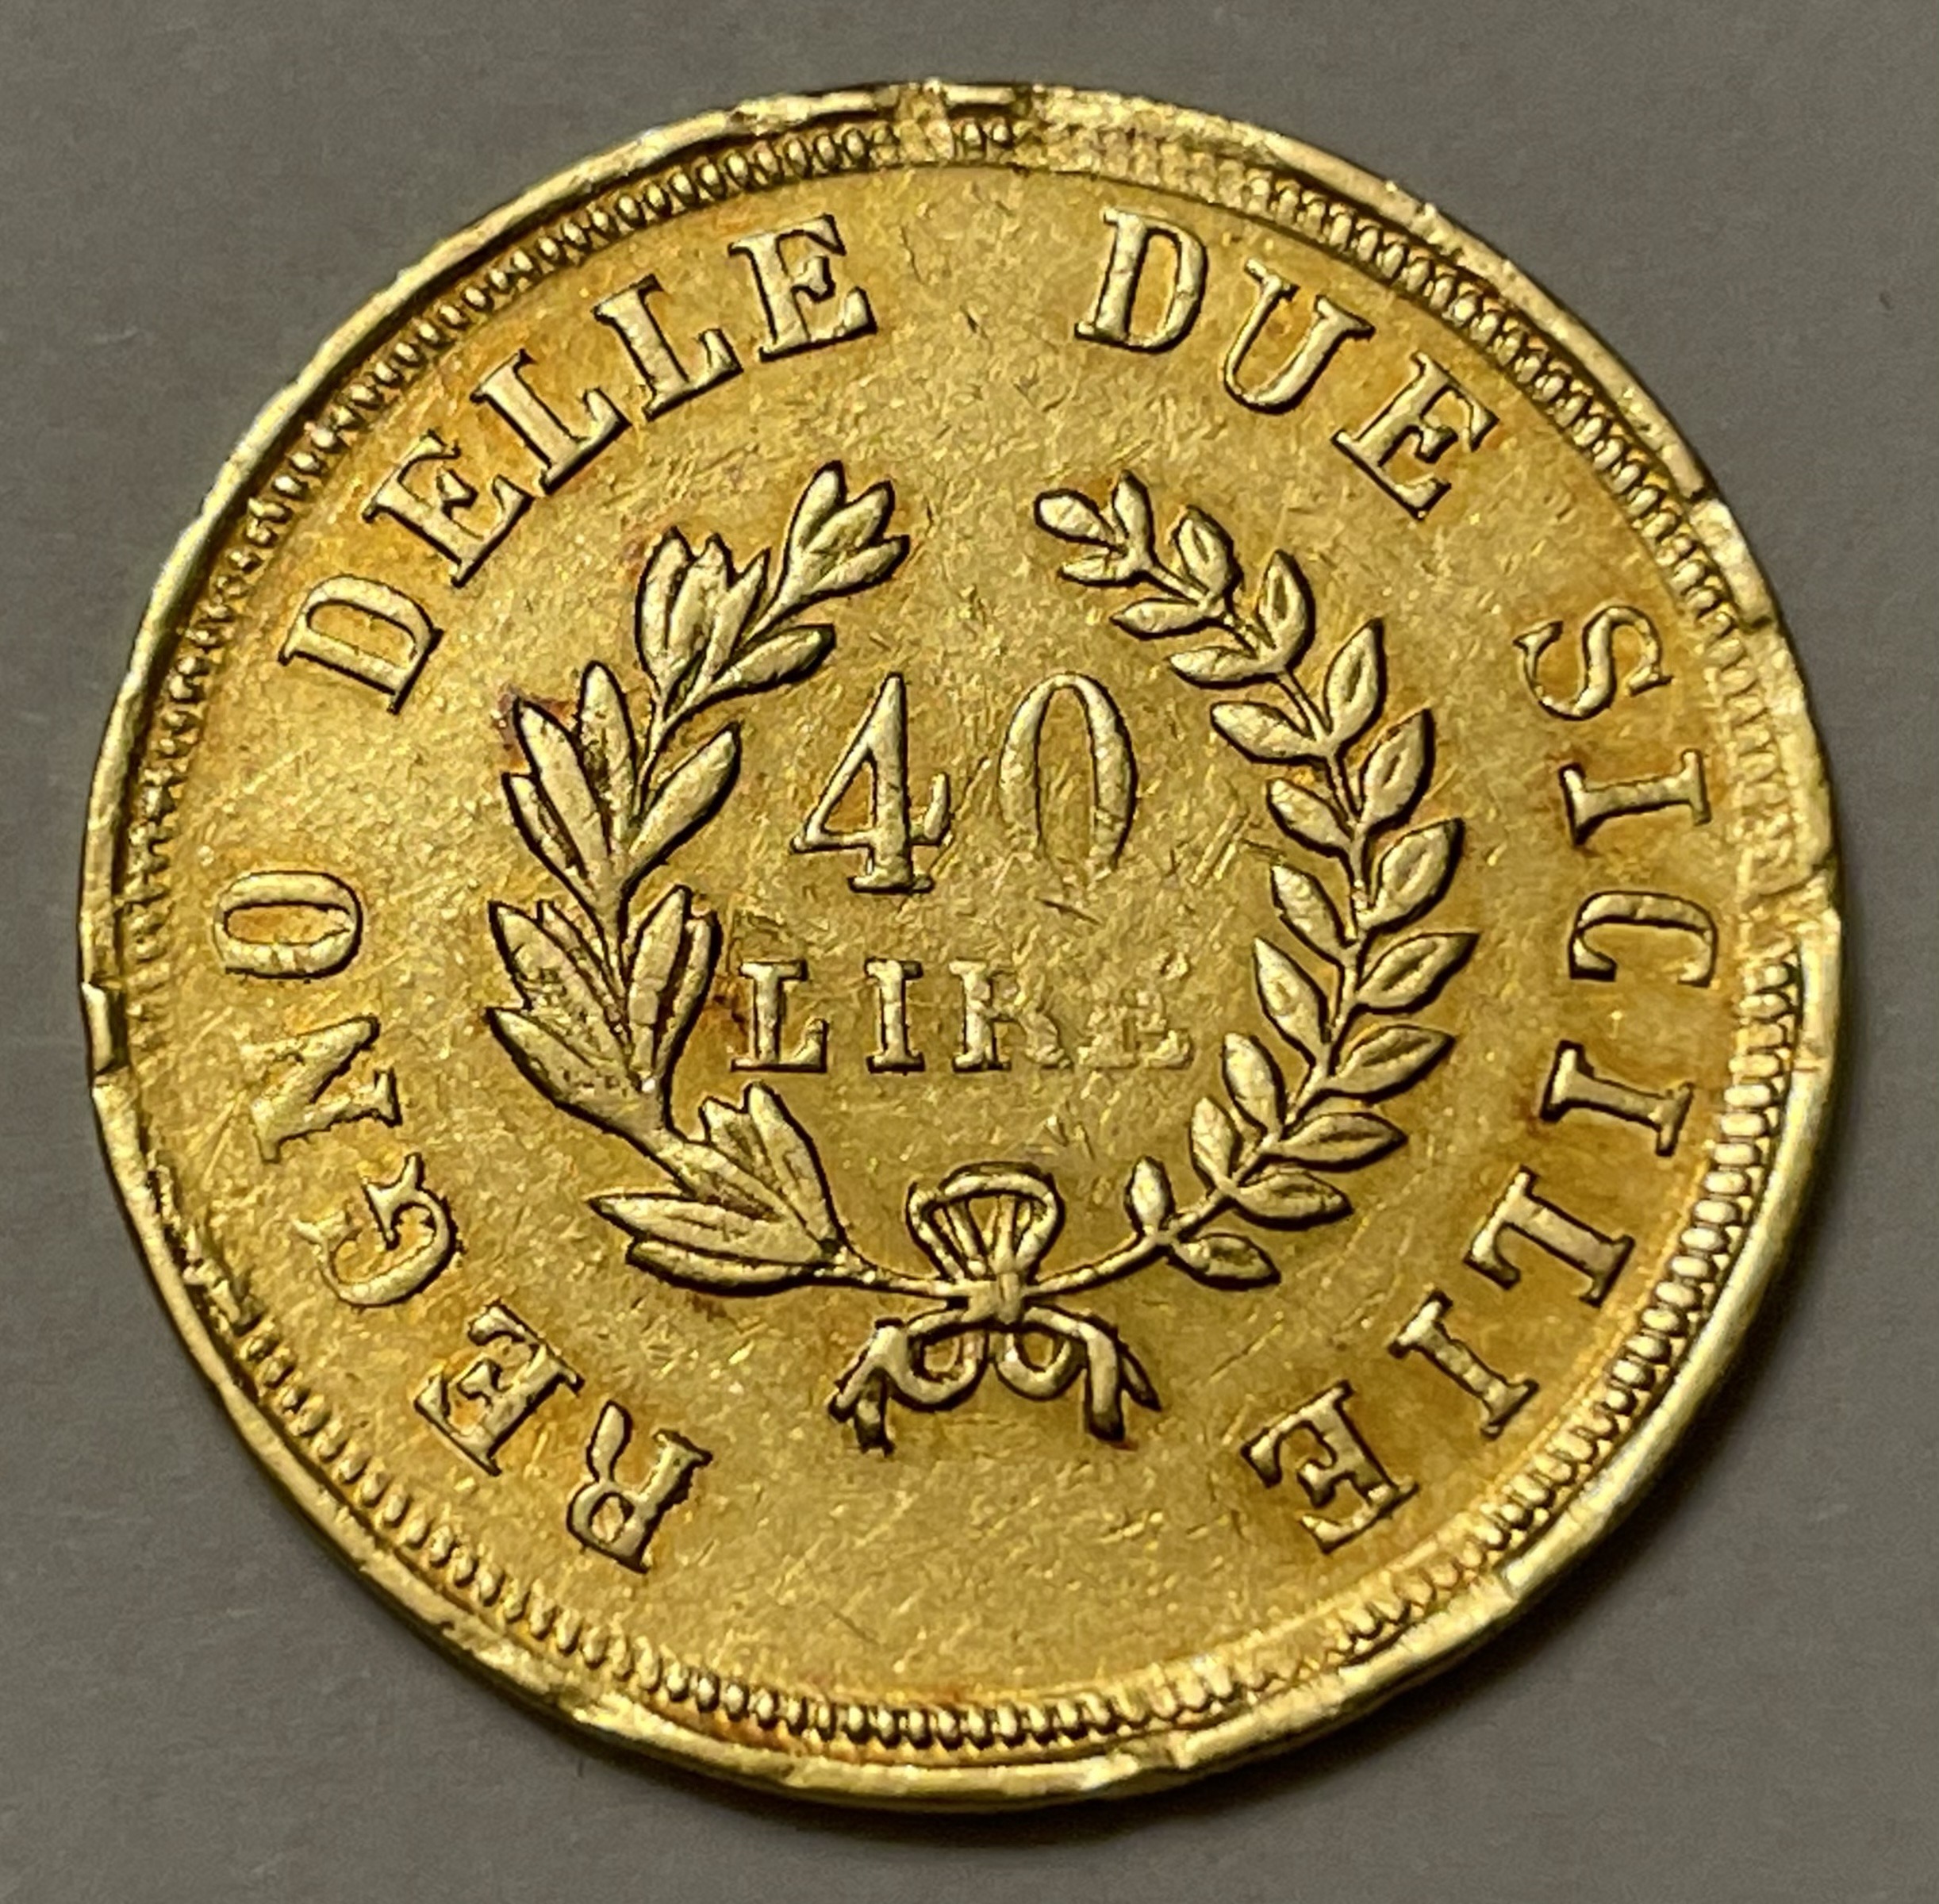 Gioacchino Napoleone Regno delle due Sicilie Gold Oro Coin moneta Italia Antiche monete collezione Ancient coin collection 40 Lire 1813